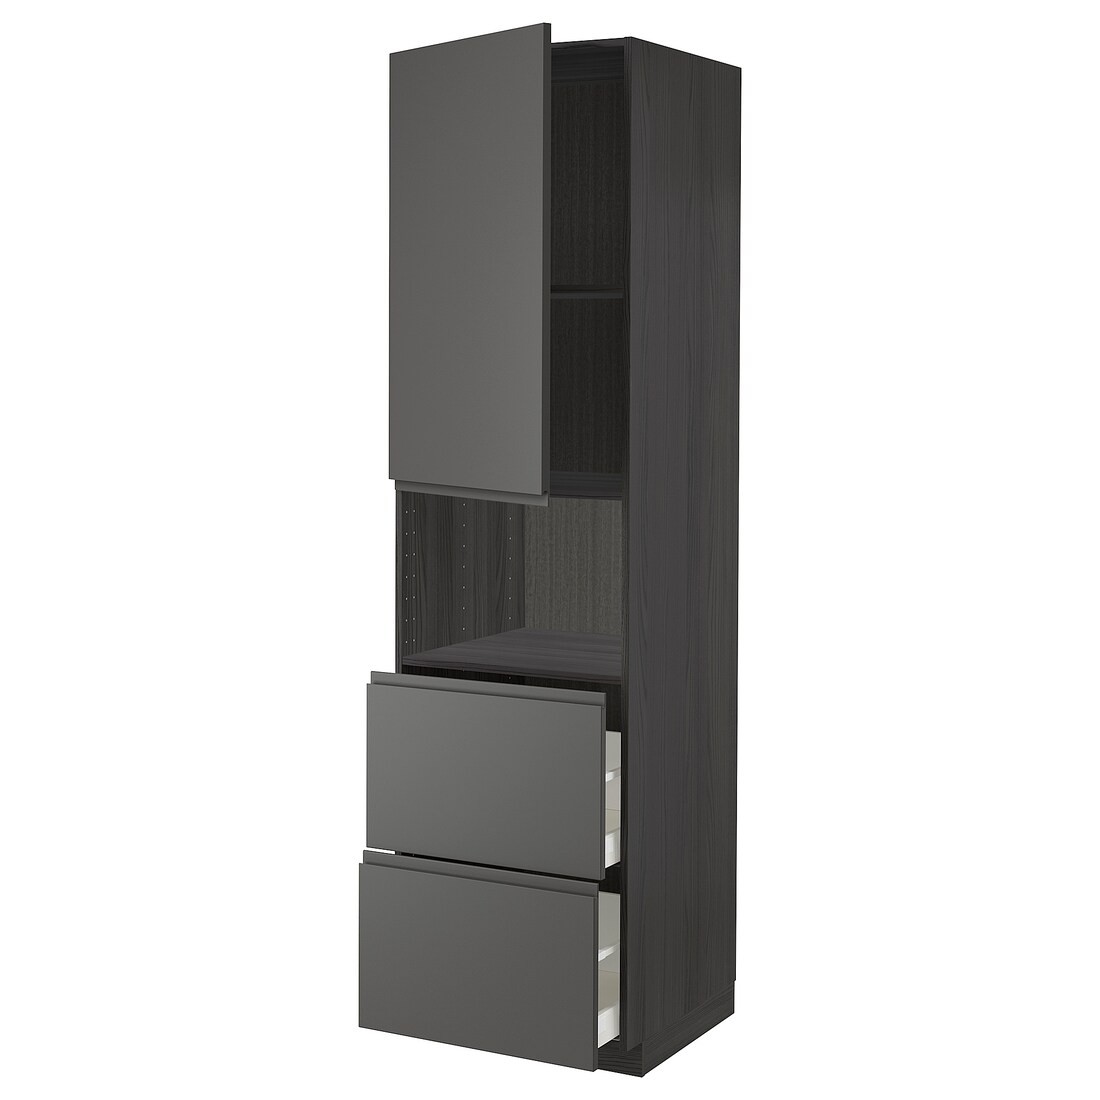 METOD МЕТОД / MAXIMERA МАКСИМЕРА Высокий шкаф для микроволновки с дверями / 2 ящика, черный / Voxtorp темно-серый, 60x60x220 см